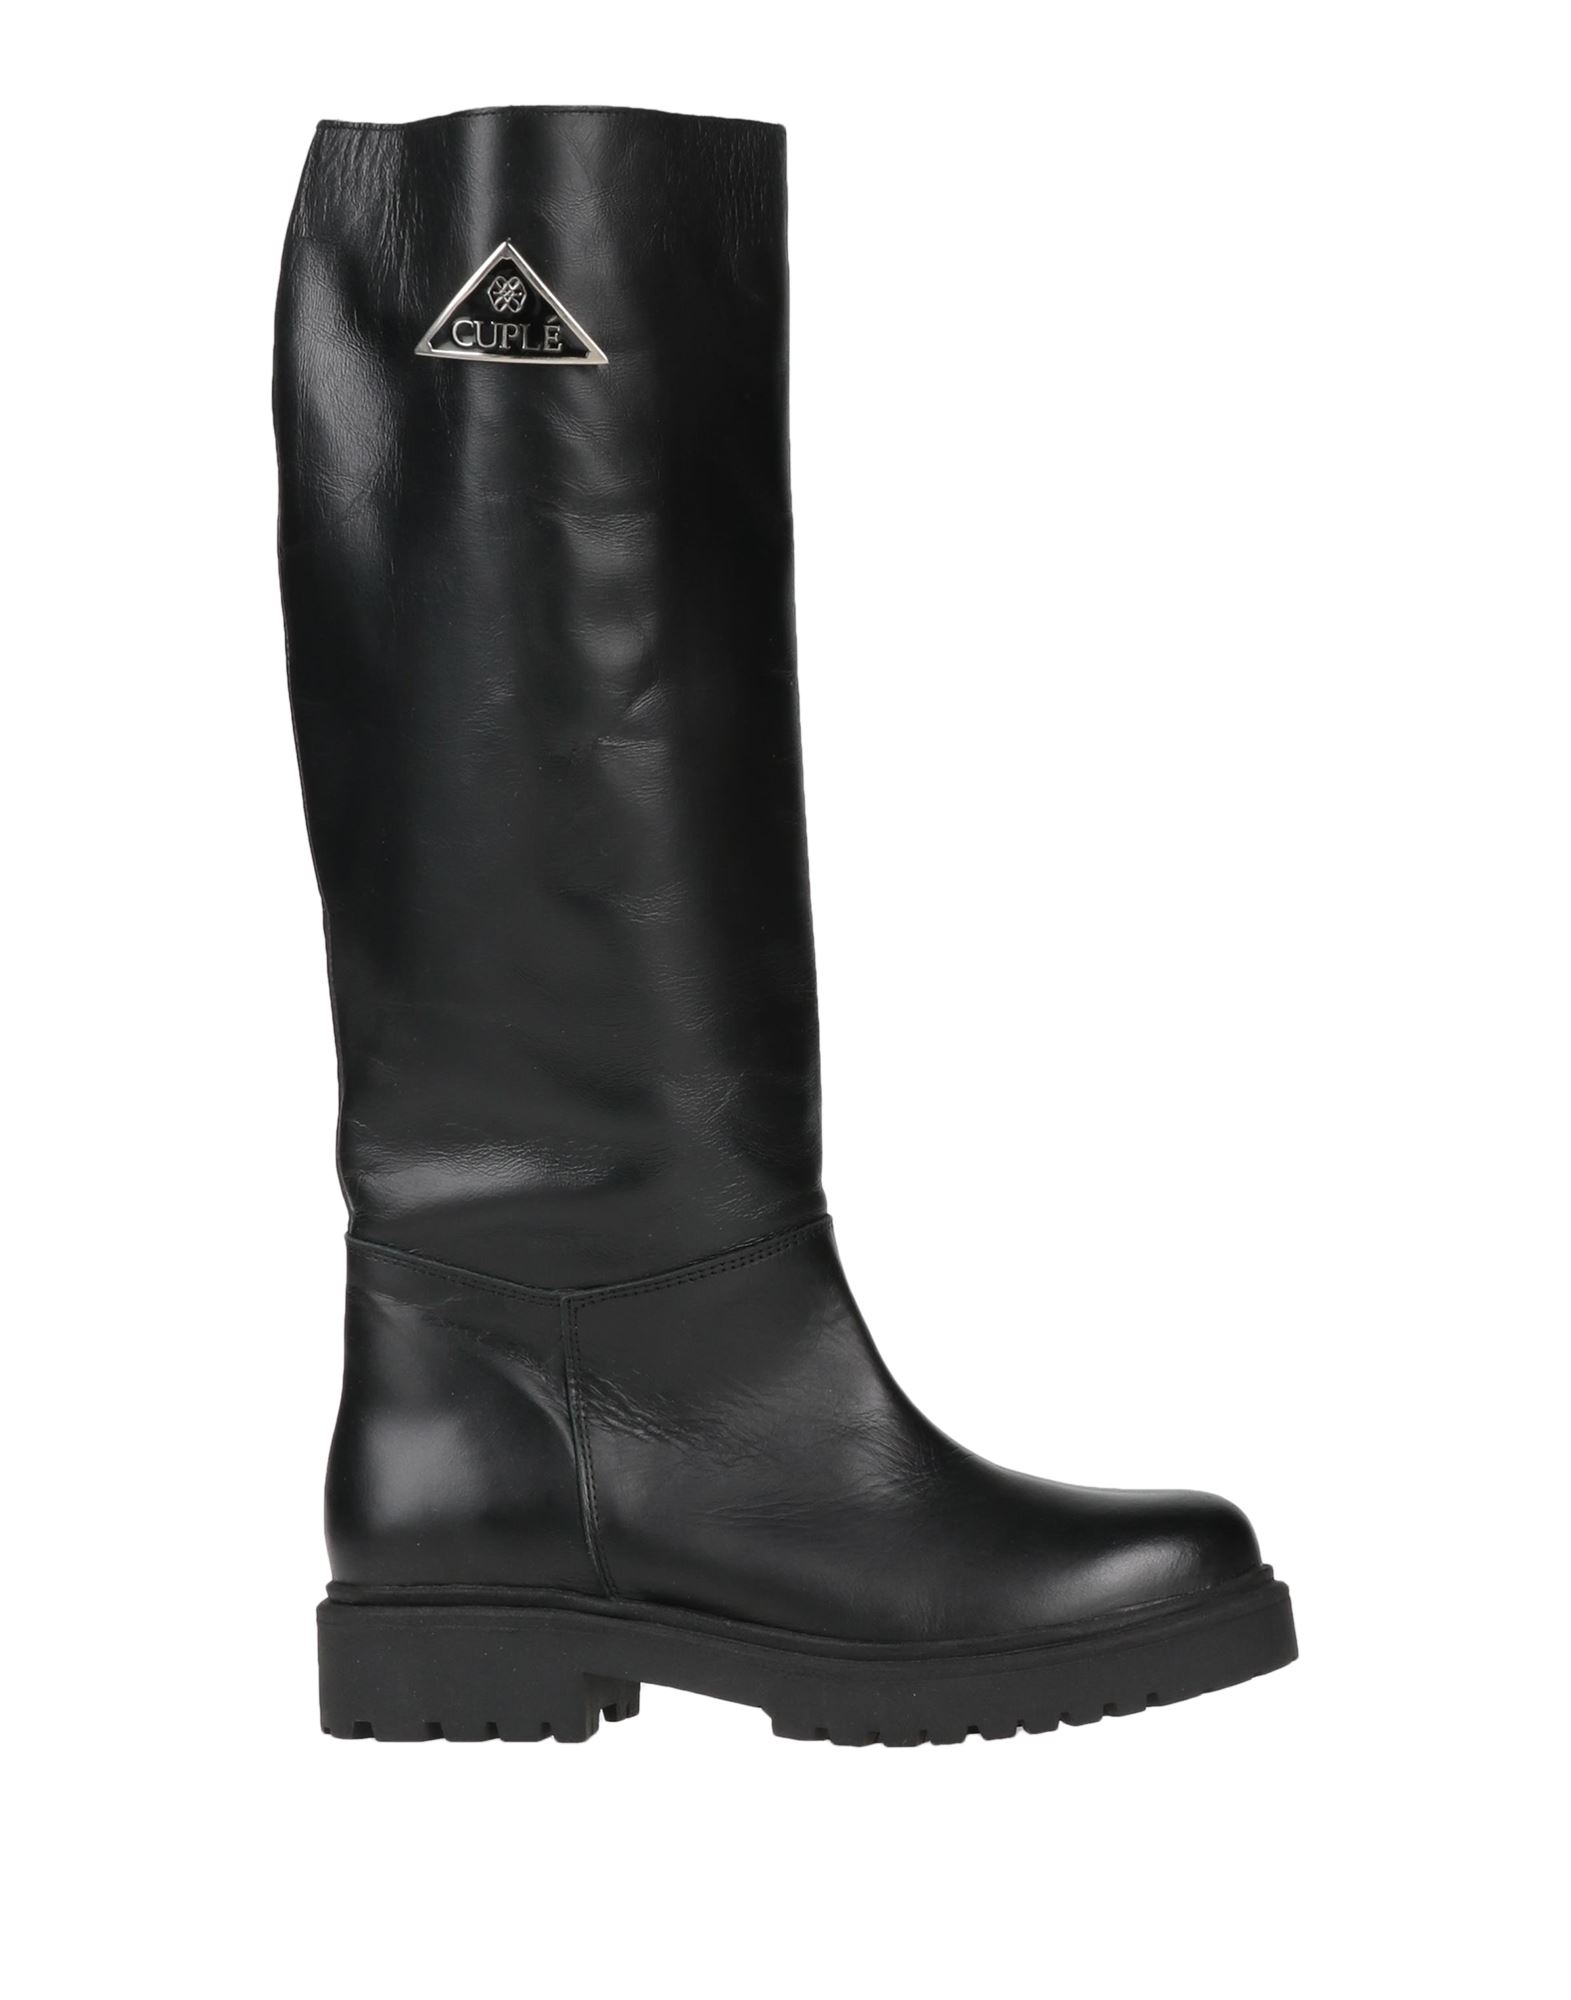 Shop Cuplé Woman Boot Black Size 8 Soft Leather